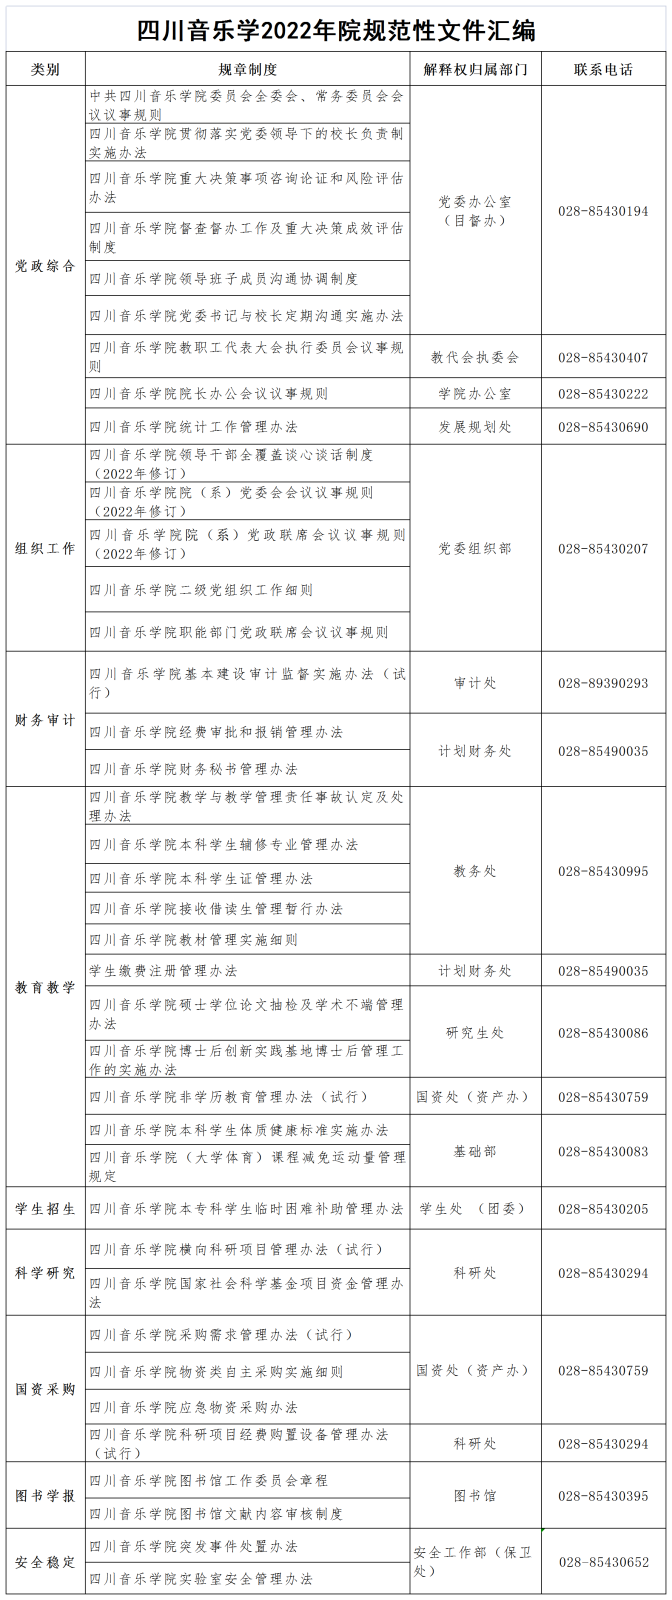 四川音乐学2022年院规范性文件汇编_Sheet1.png